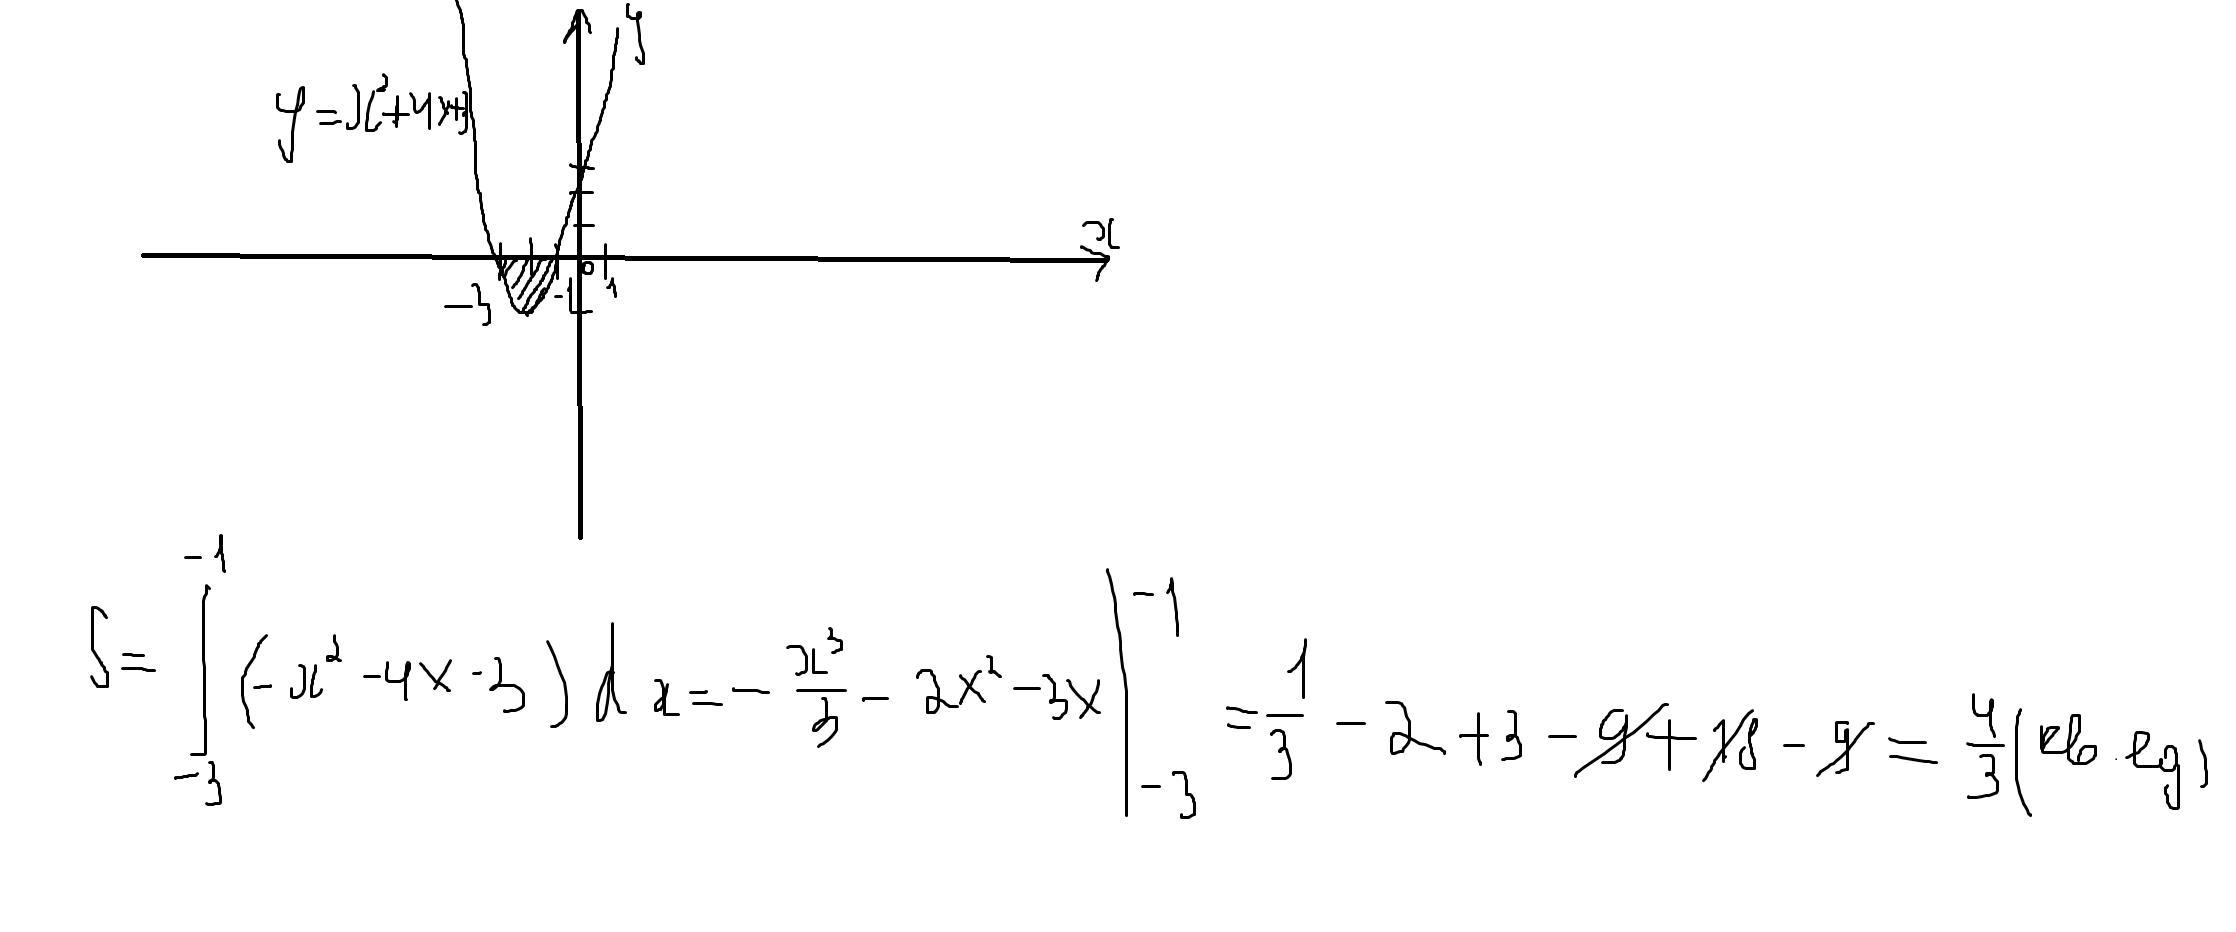 Y 3 5x 9 с осью ox. Площадь фигуры ограниченной линиями x2-x и -x2+3x. Вычислить площадь фигуры, ограниченной осью Ox и линией y=x^2-x. Найдите площадь фигуры ограниченной осью Ox и параболой y 4-x2. Найдите площадь фигуры ограниченной параболой y=x^2-4x+3.